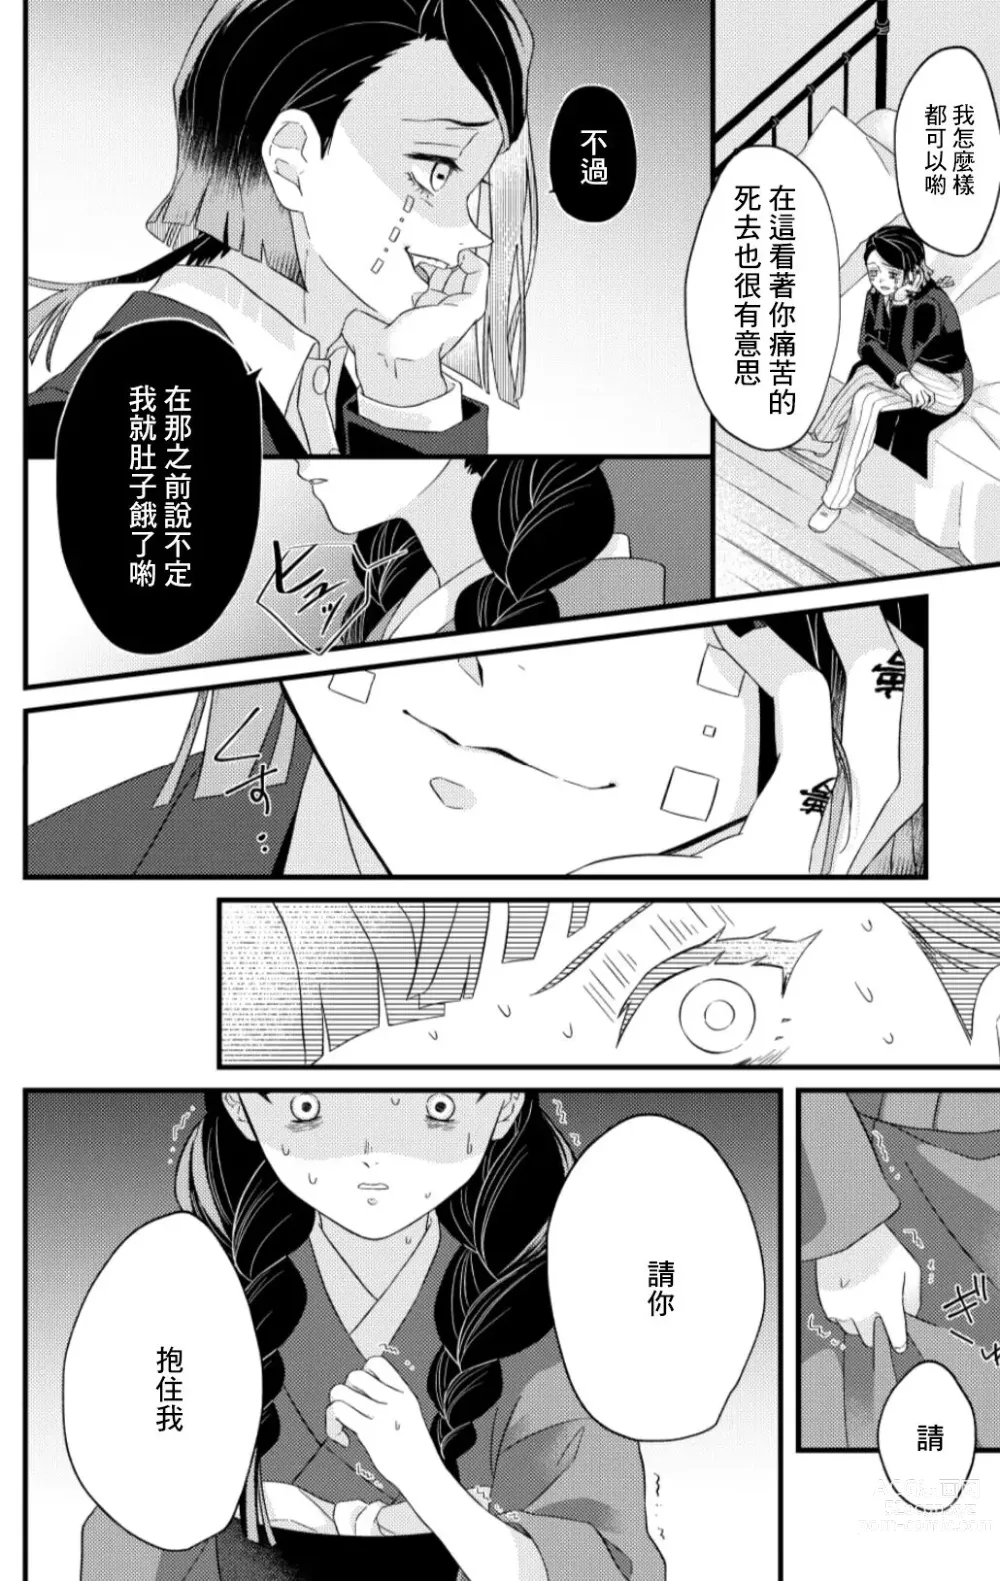 Page 3 of doujinshi Doukin Shinai to Derarenai Heya